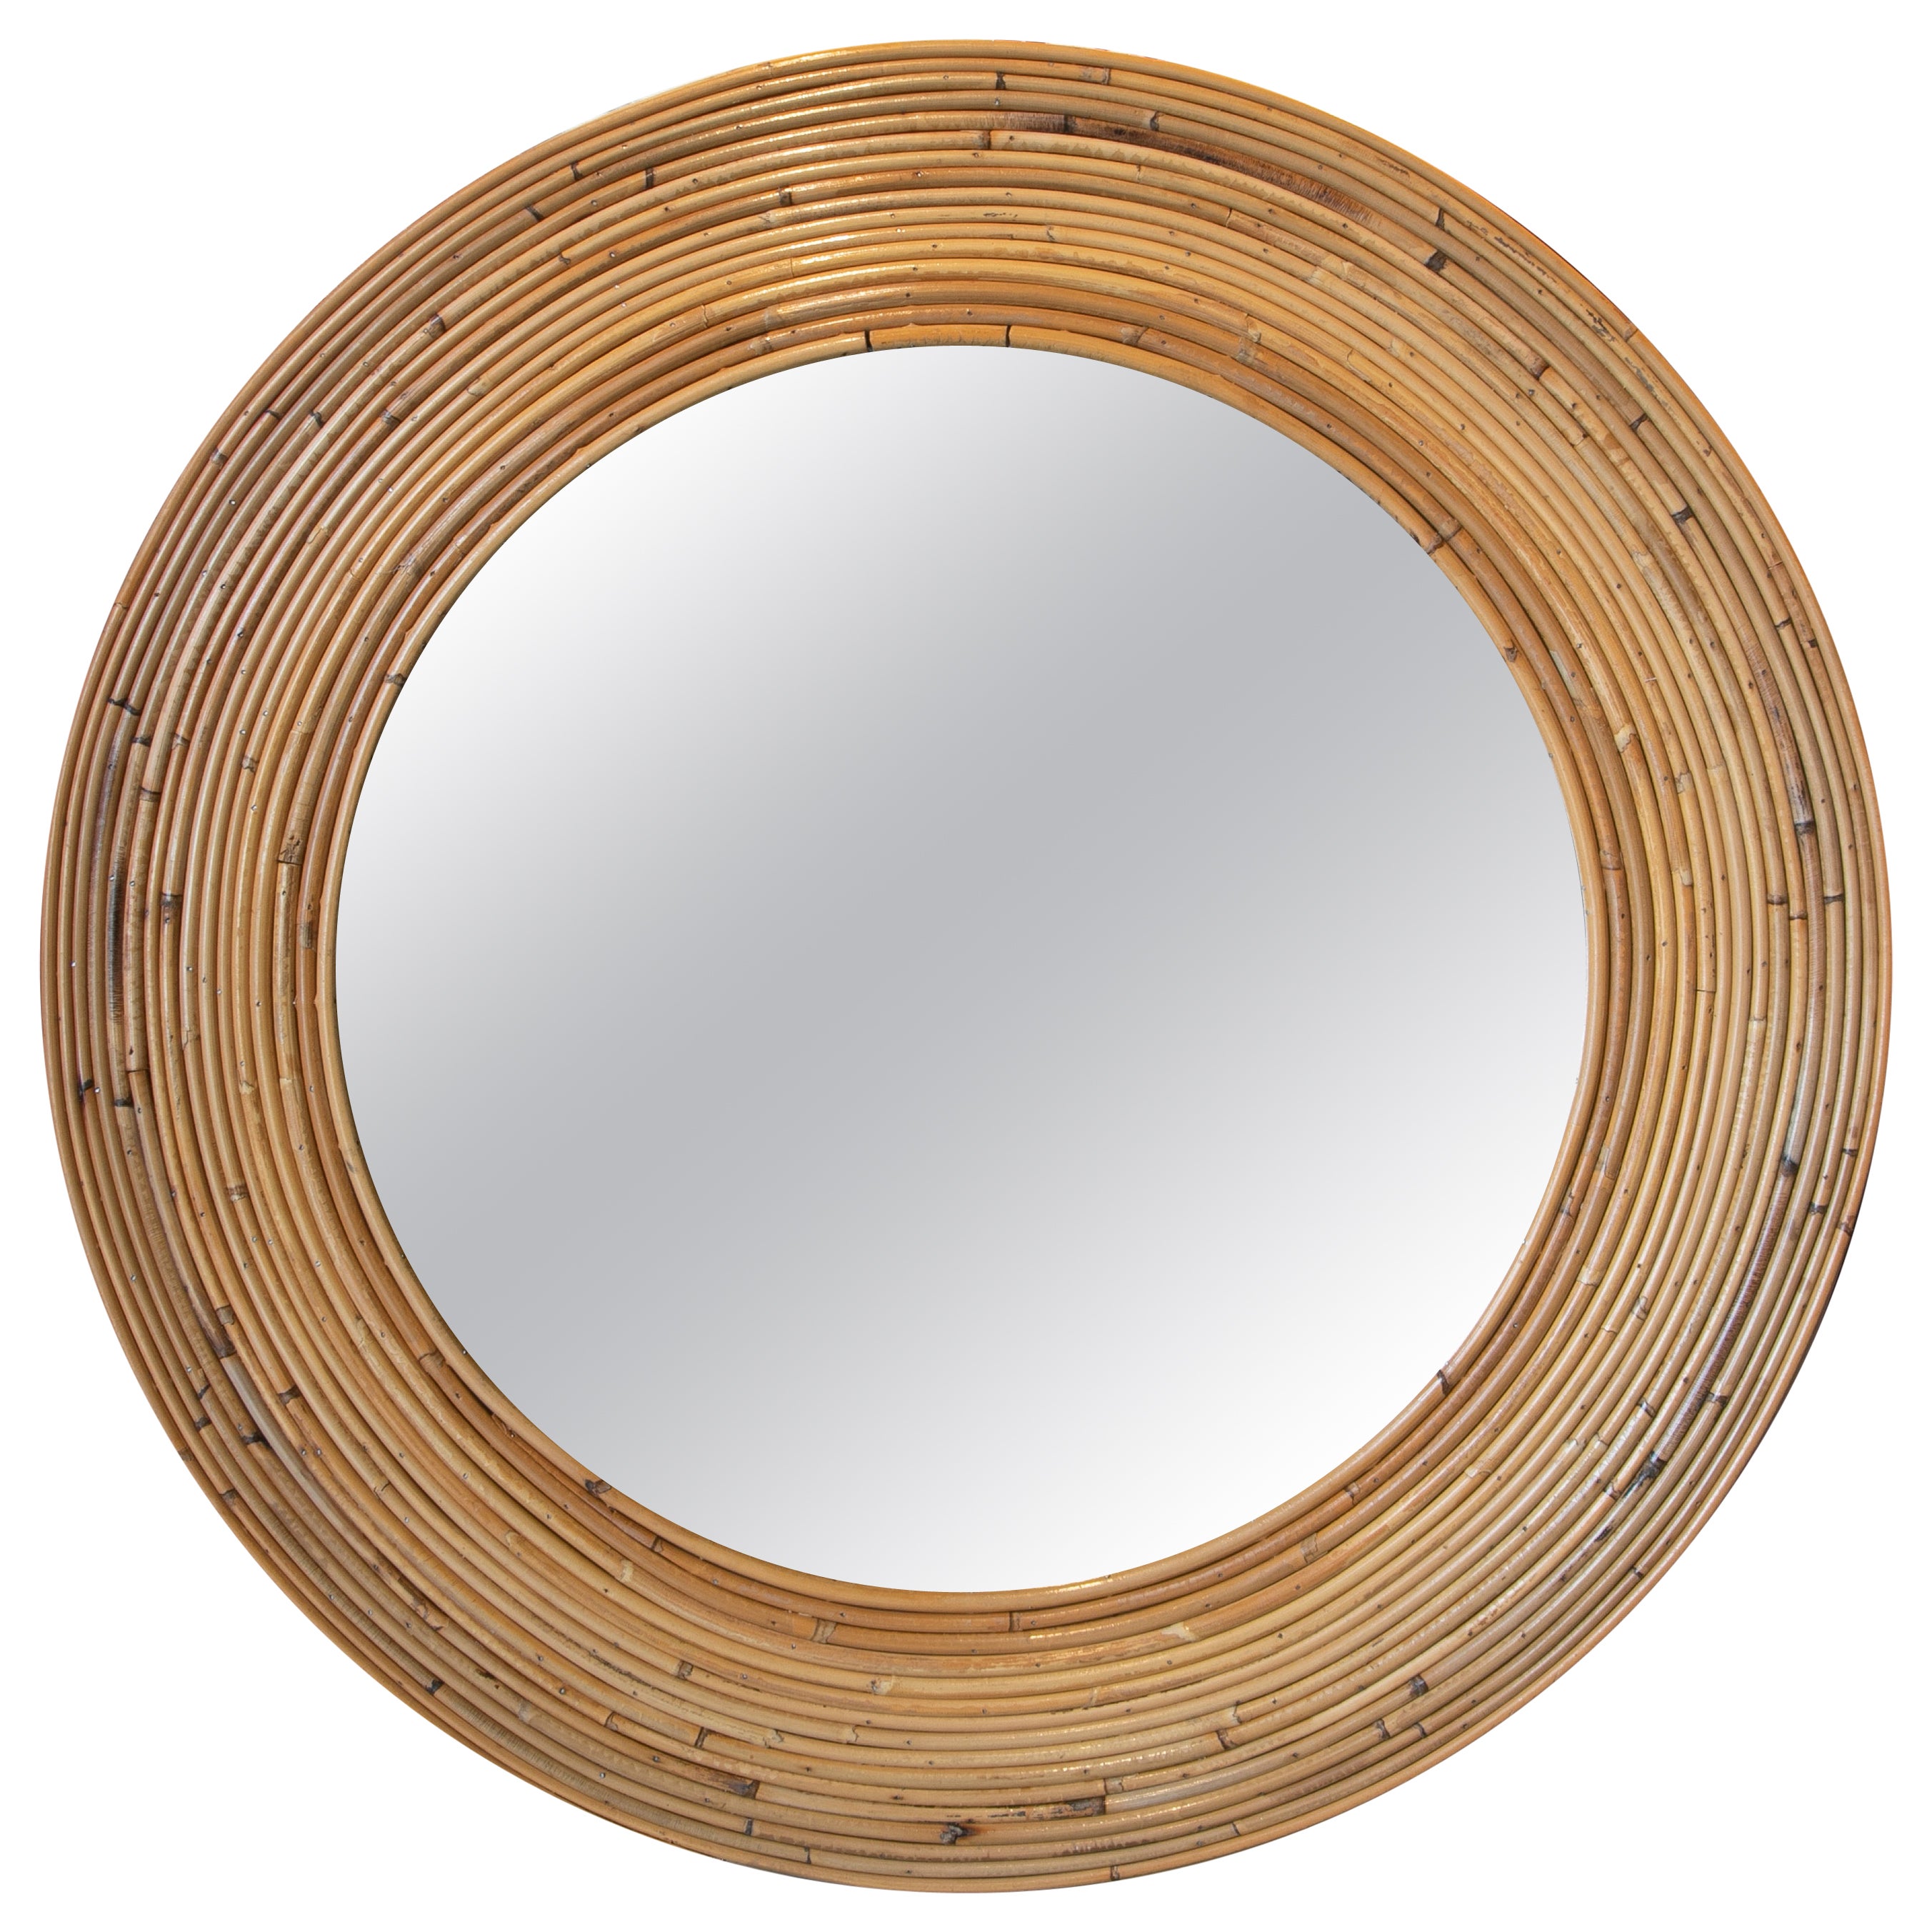 Handmade Round Bamboo Mirror